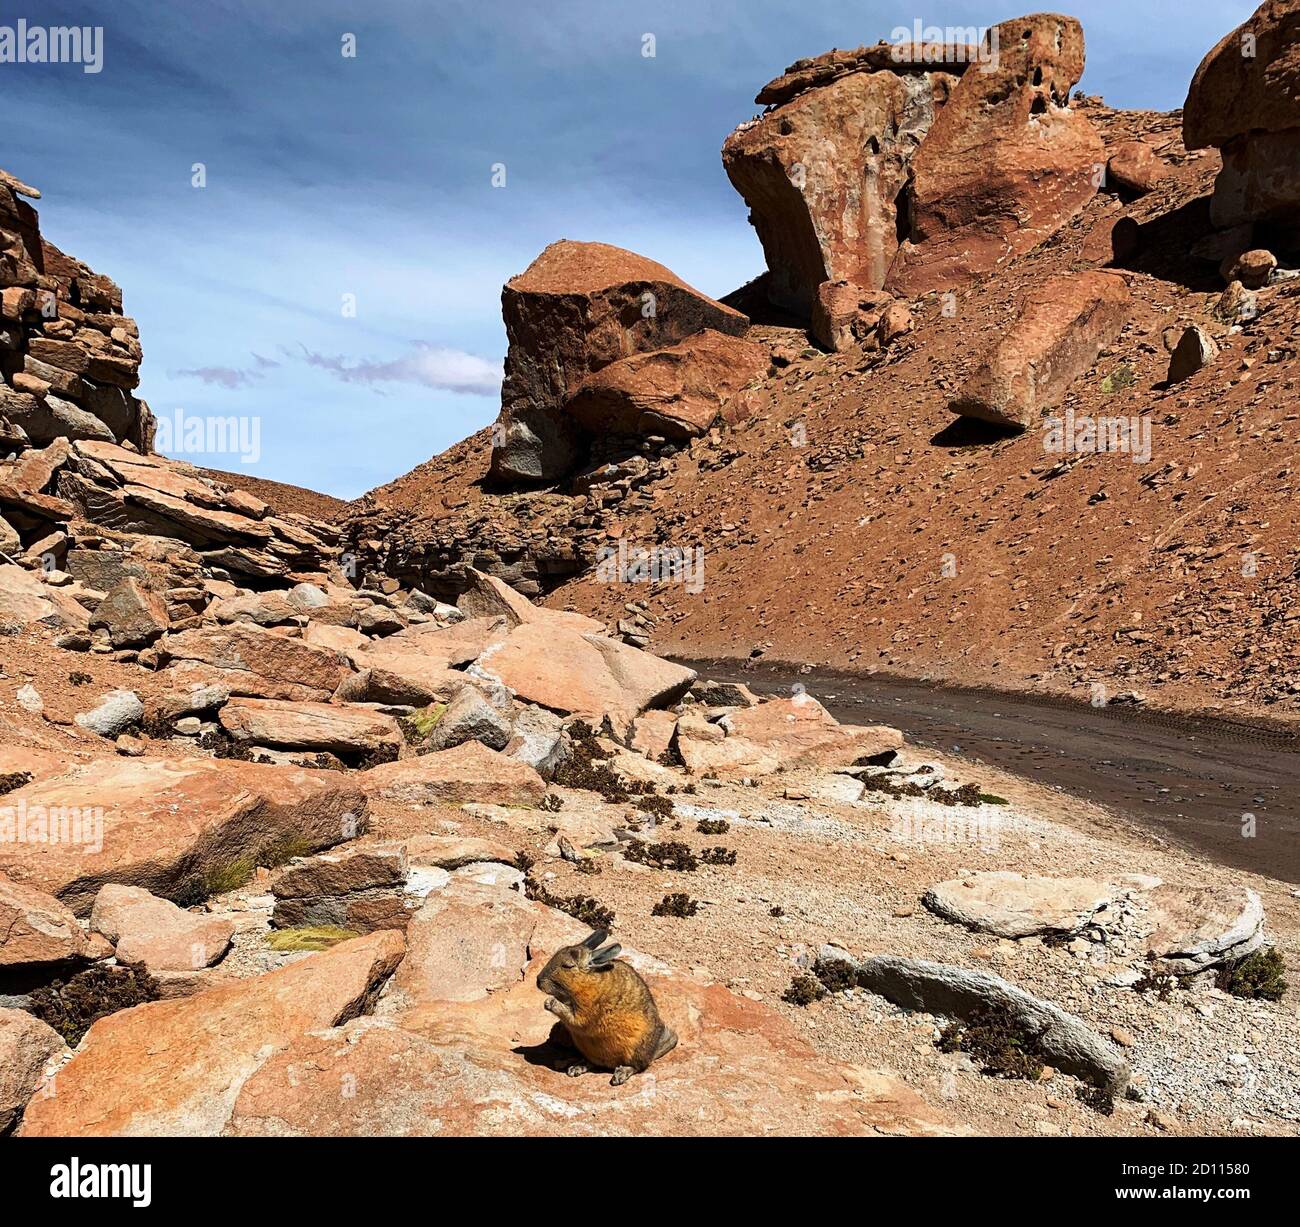 Le rongeur d'animaux sauvages Viscacha Viscacia Lagidium est installé sur une pierre au bord du canyon rocheux pittoresque des Andes, la Bolivie, comme un lapin. Banque D'Images